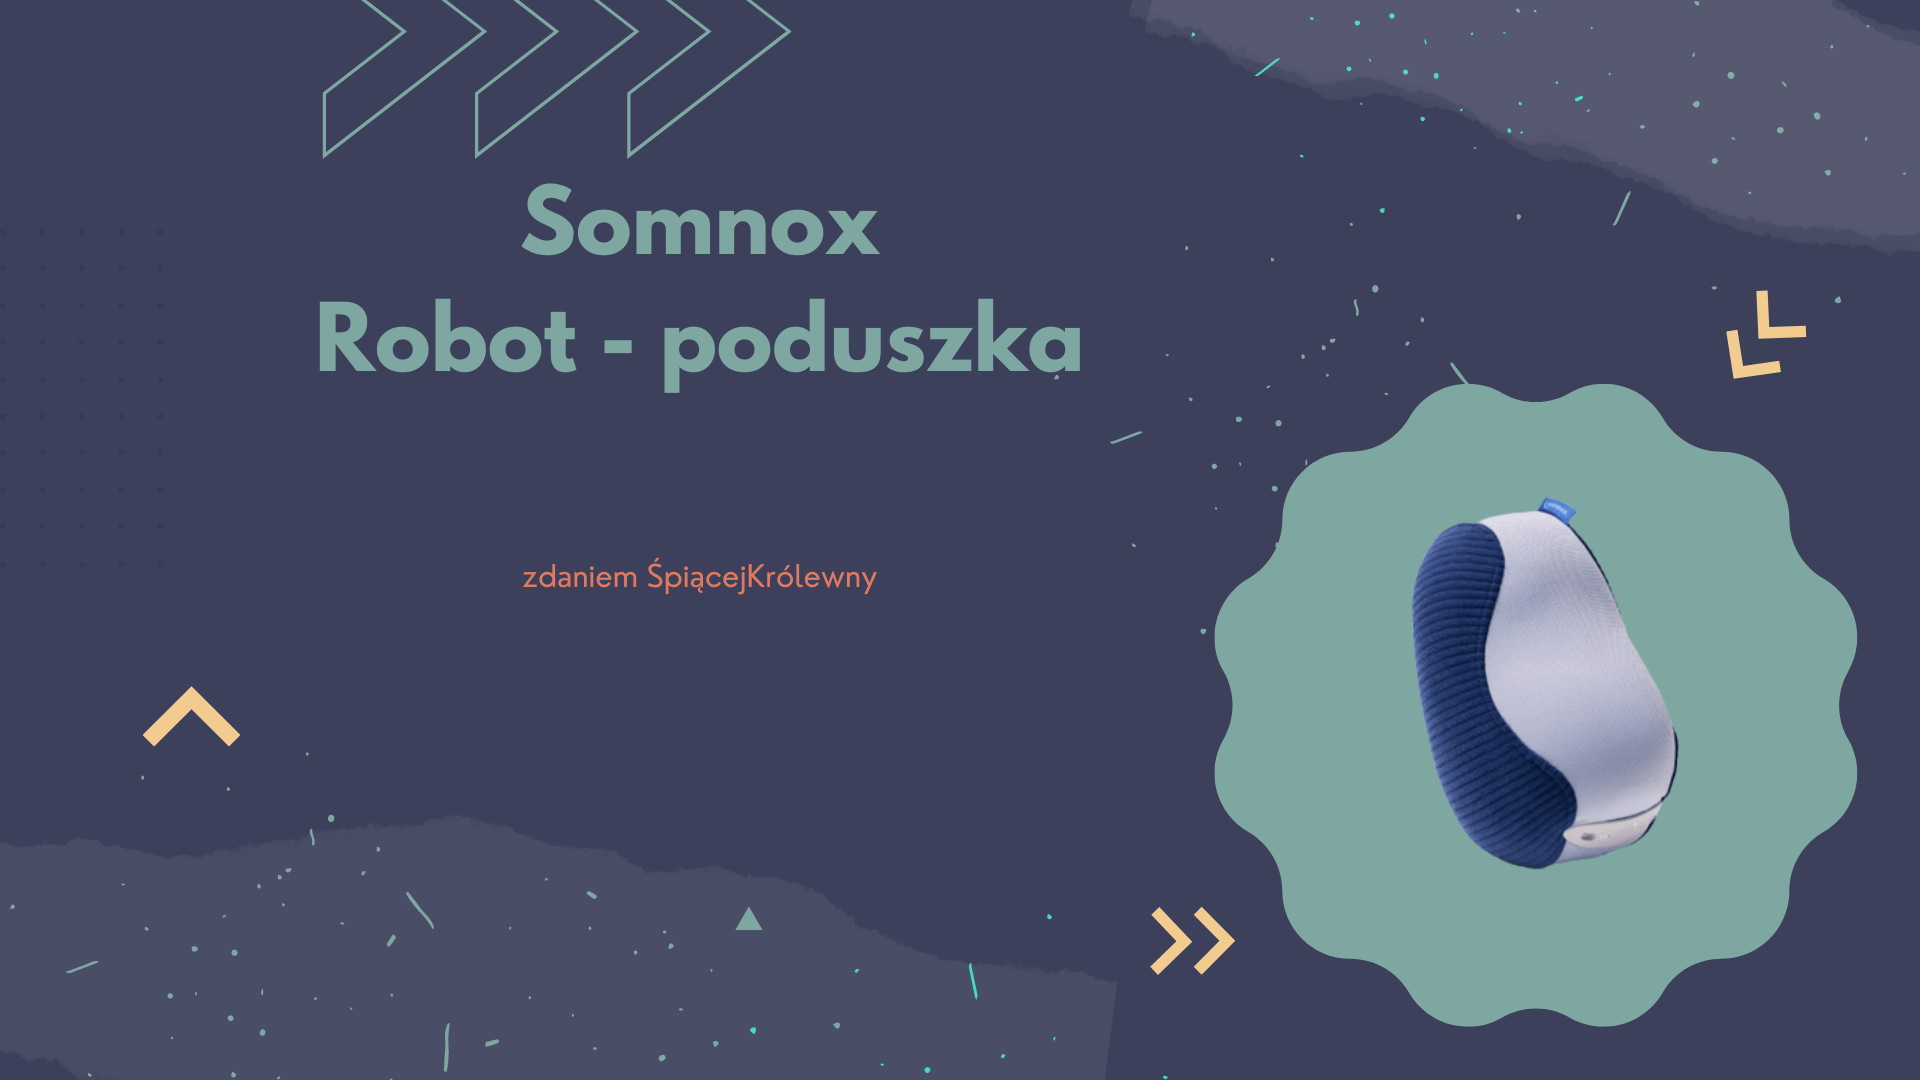 somnox - robot poduszka